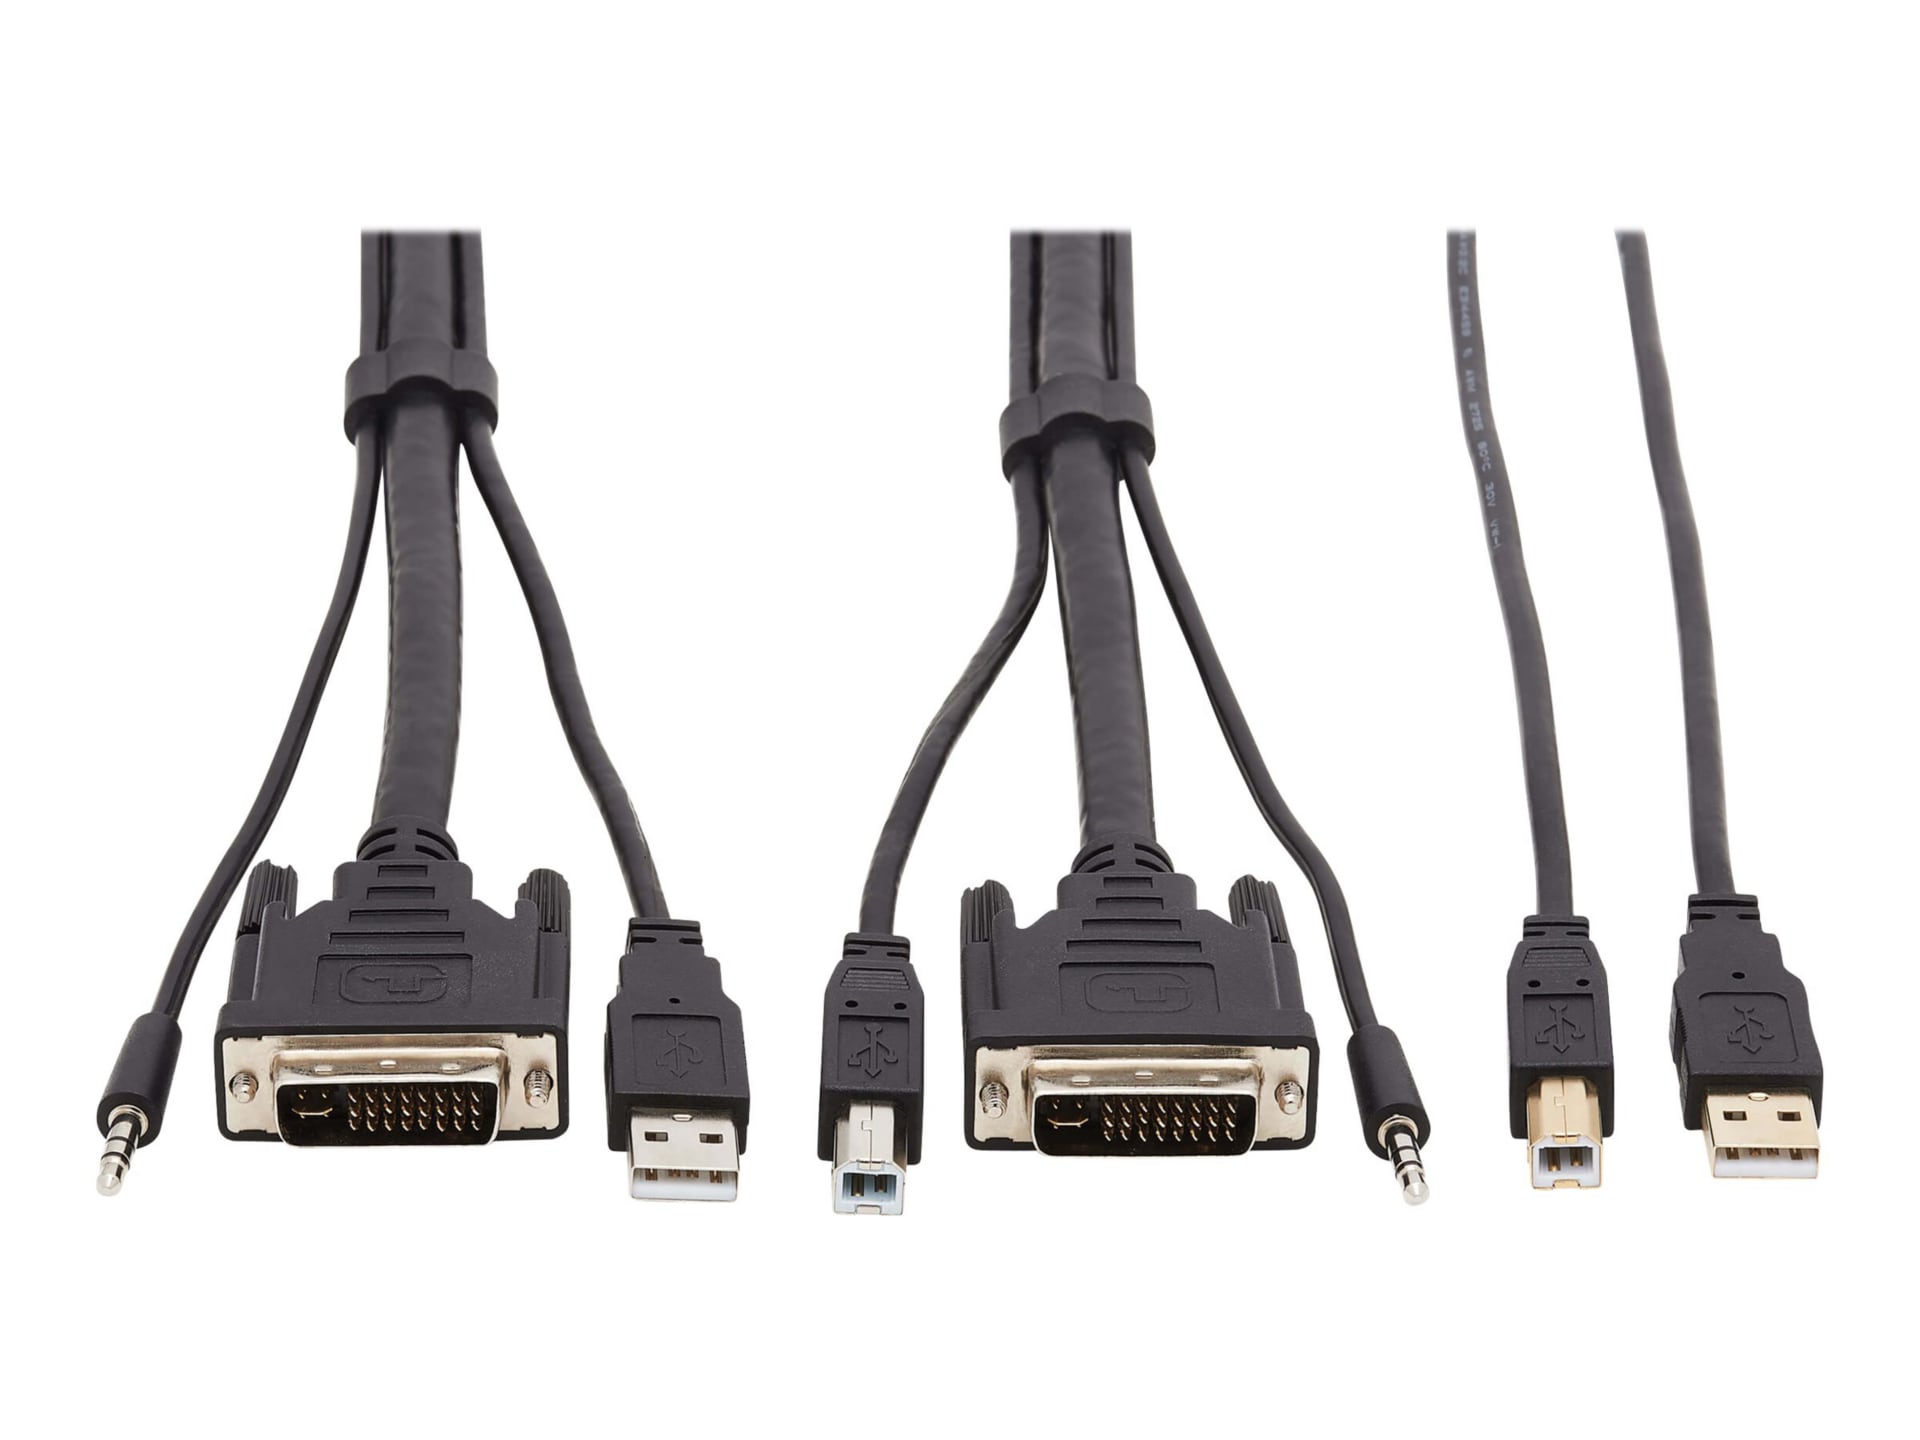 Tripp Lite DVI KVM Cable Kit - DVI, USB, 3.5 mm Audio (3xM/3xM) + USB (M/M), 1080p, 6 ft., Black - video / USB / audio